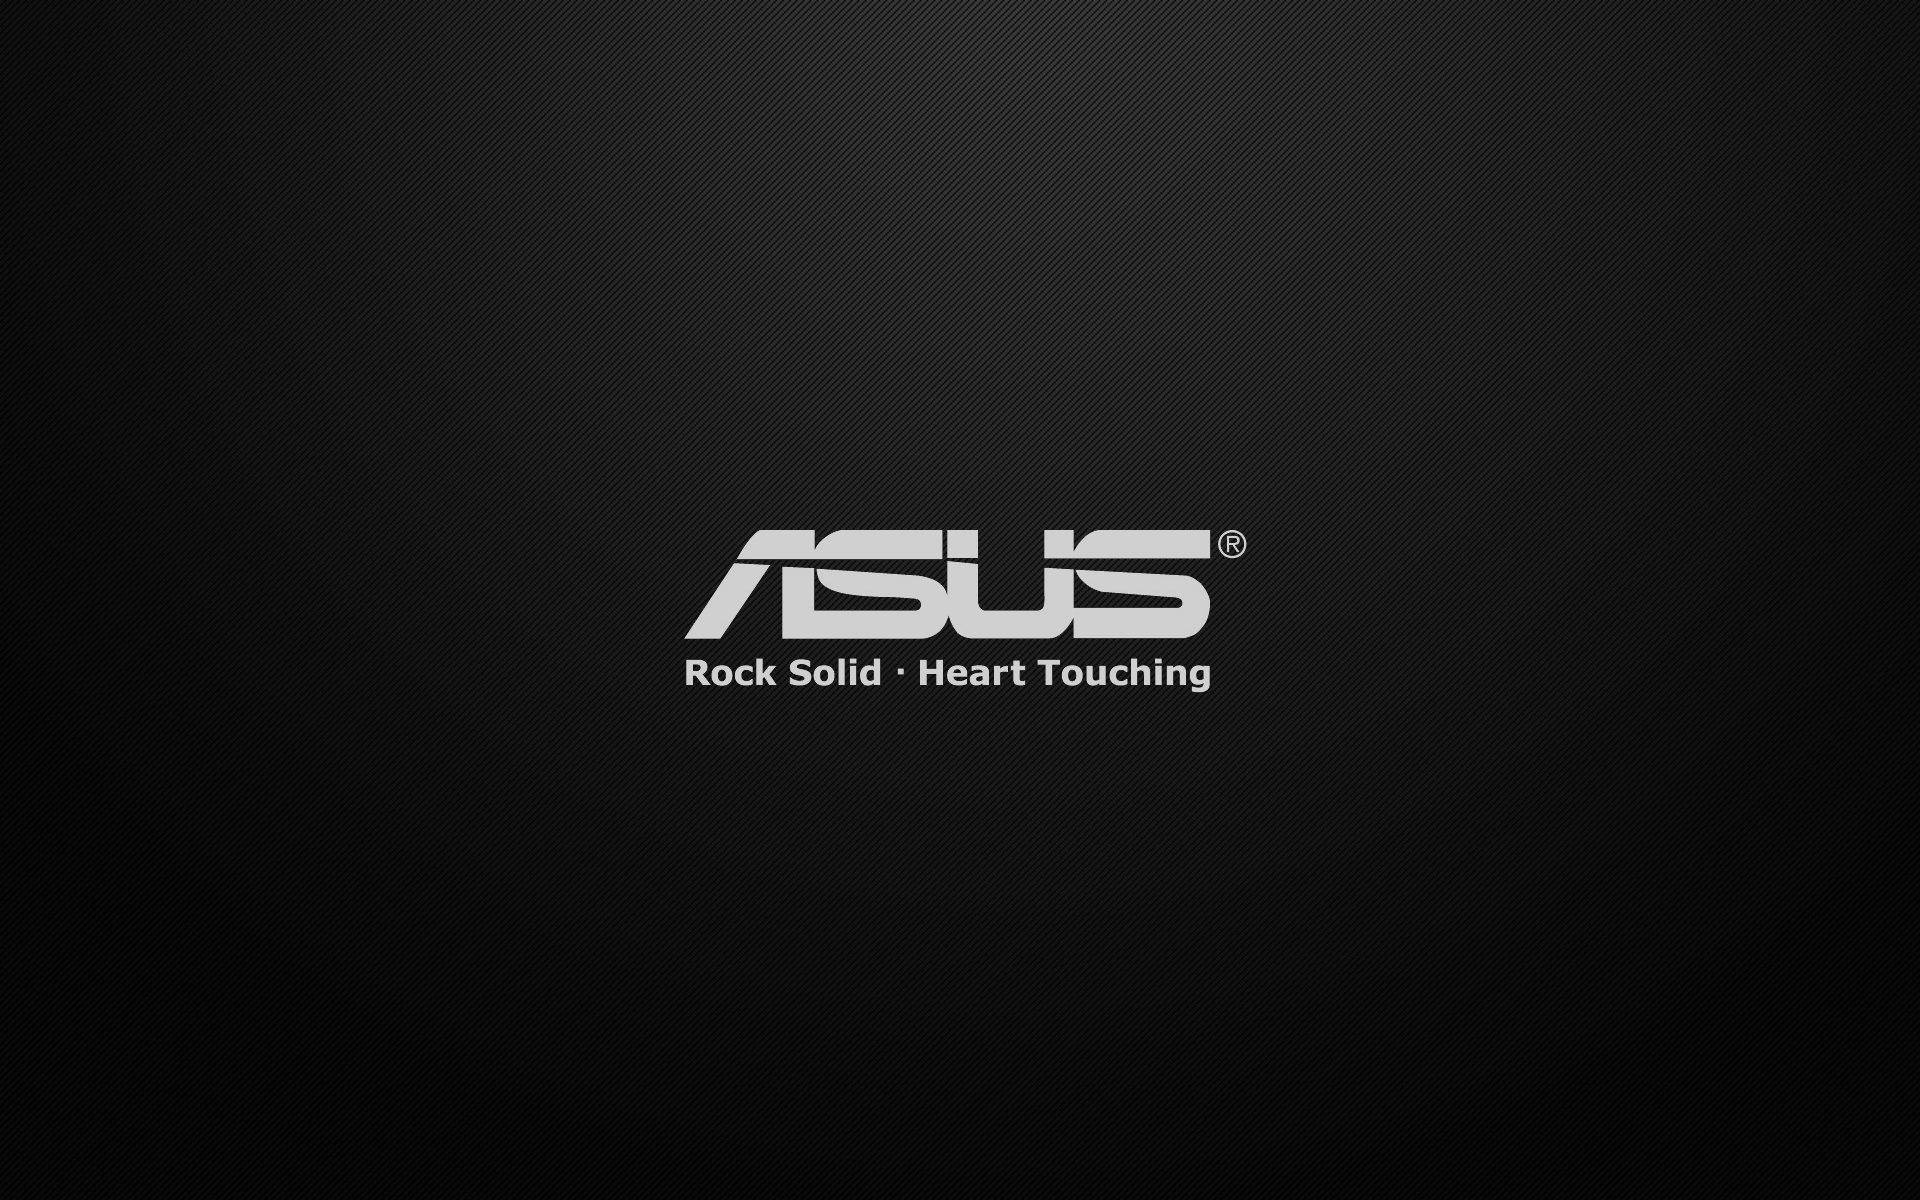 Asus Text Logo Hd